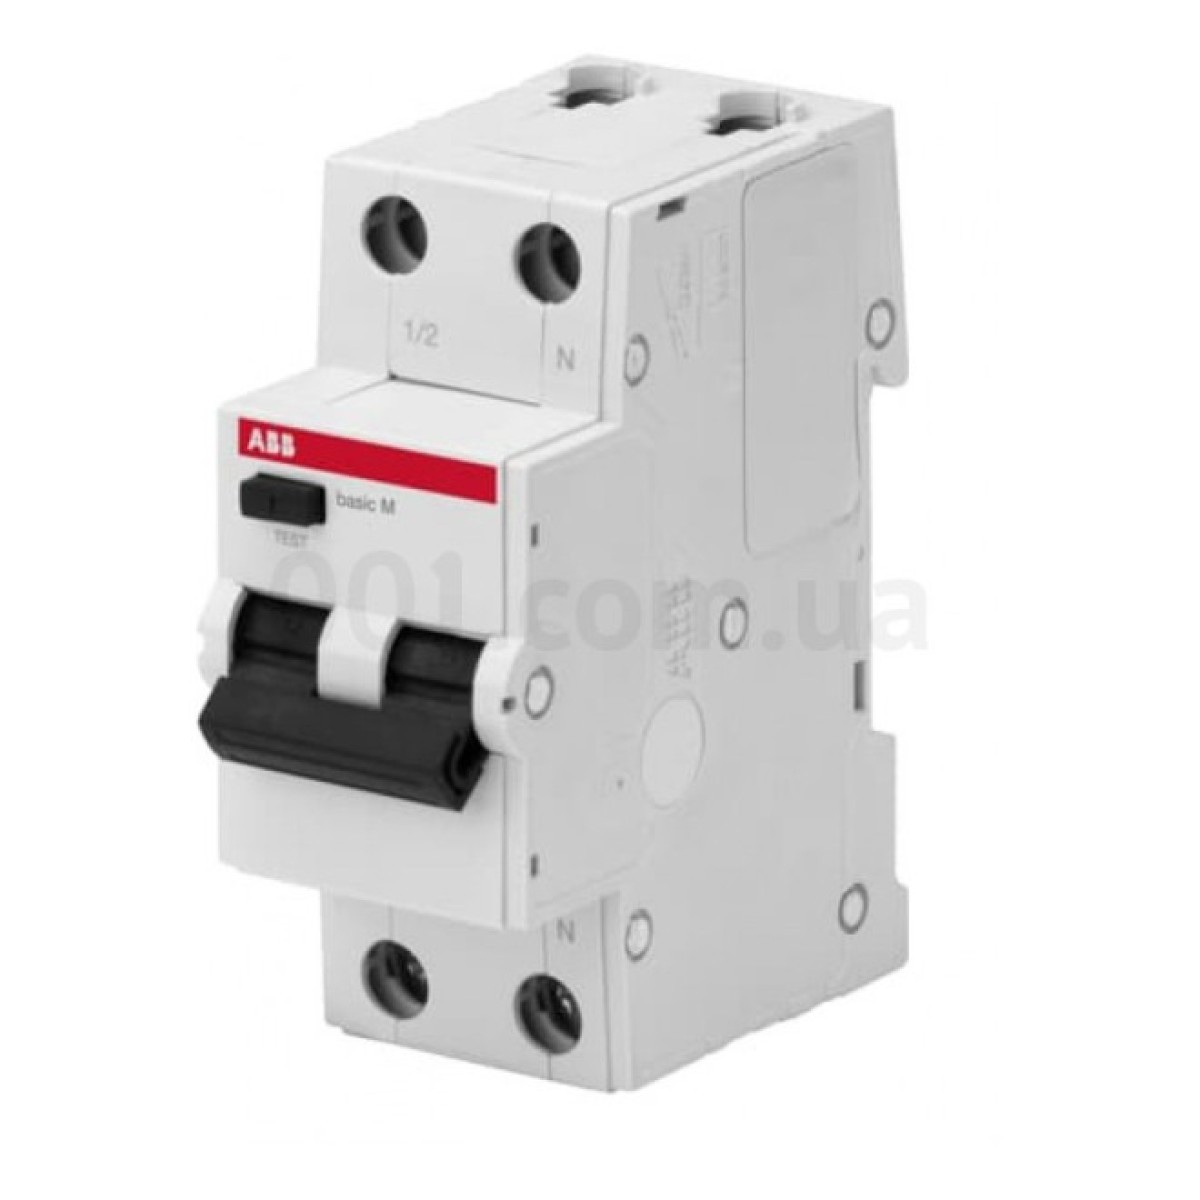 Автоматичний вимикач диференційного струму BMR415C20 1P+N/20А/30мА тип AC BASIC M, ABB 256_256.jpg